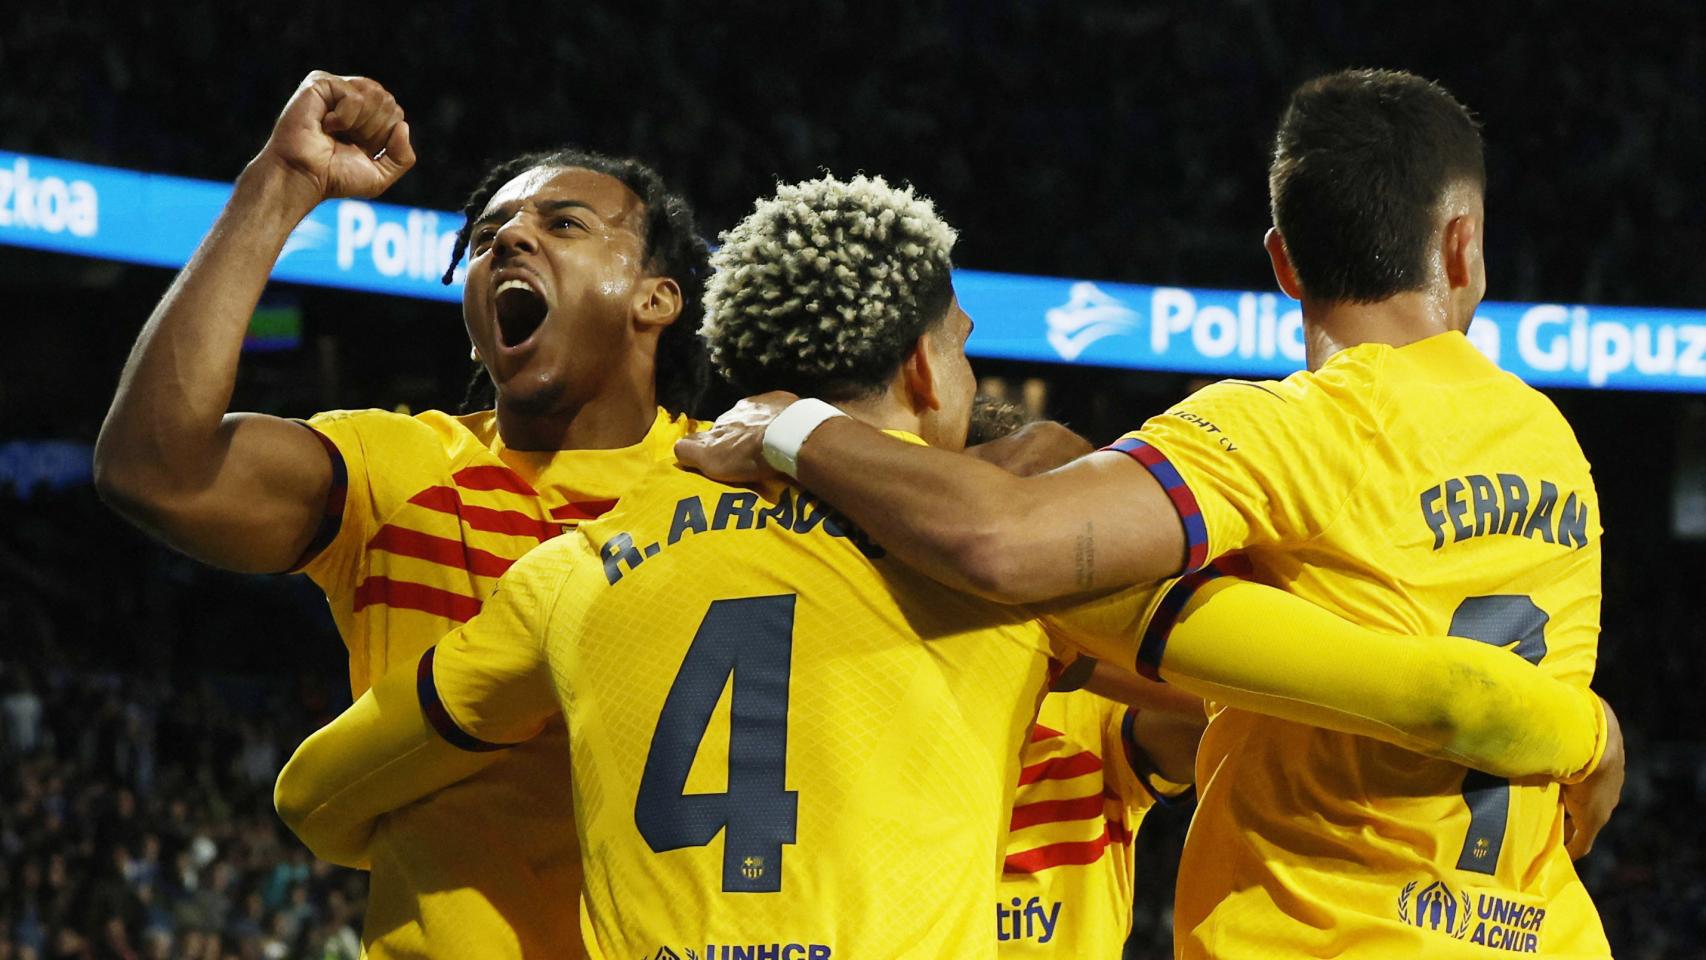 Real Sociedad - Barcelona, fútbol en directo: Araujo da el triunfo